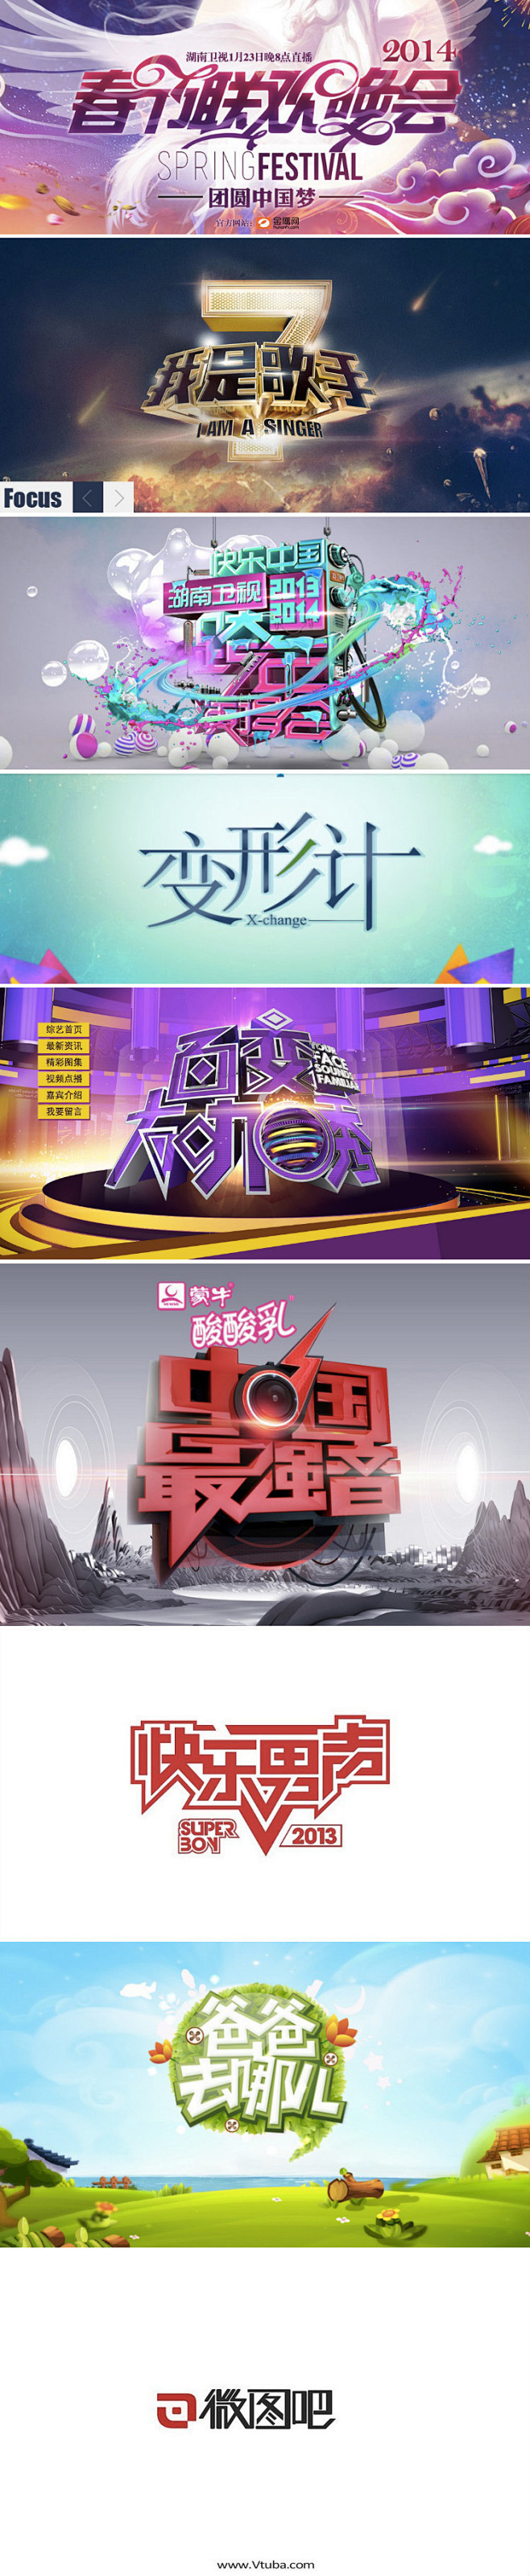 2013湖南卫视节目logo收集-vtu...